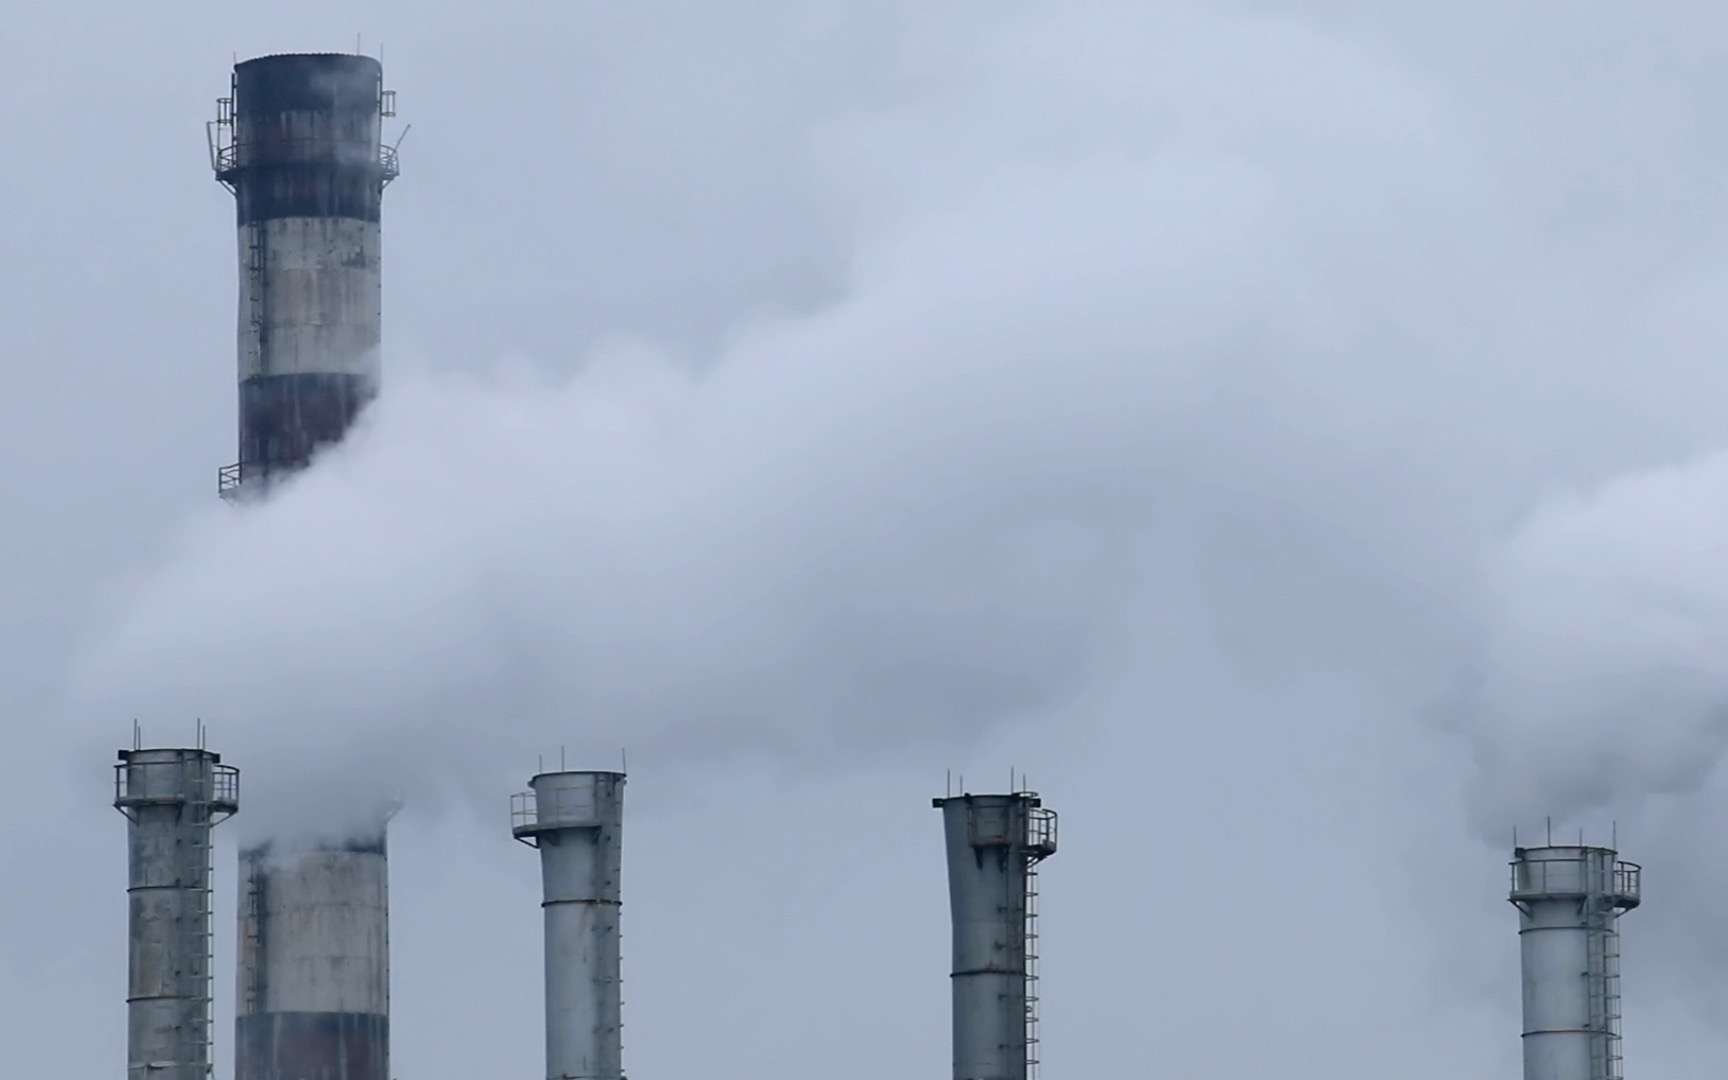 Video : les 8 cheminées d'une centrale électrique s'effondrent comme un château de cartes